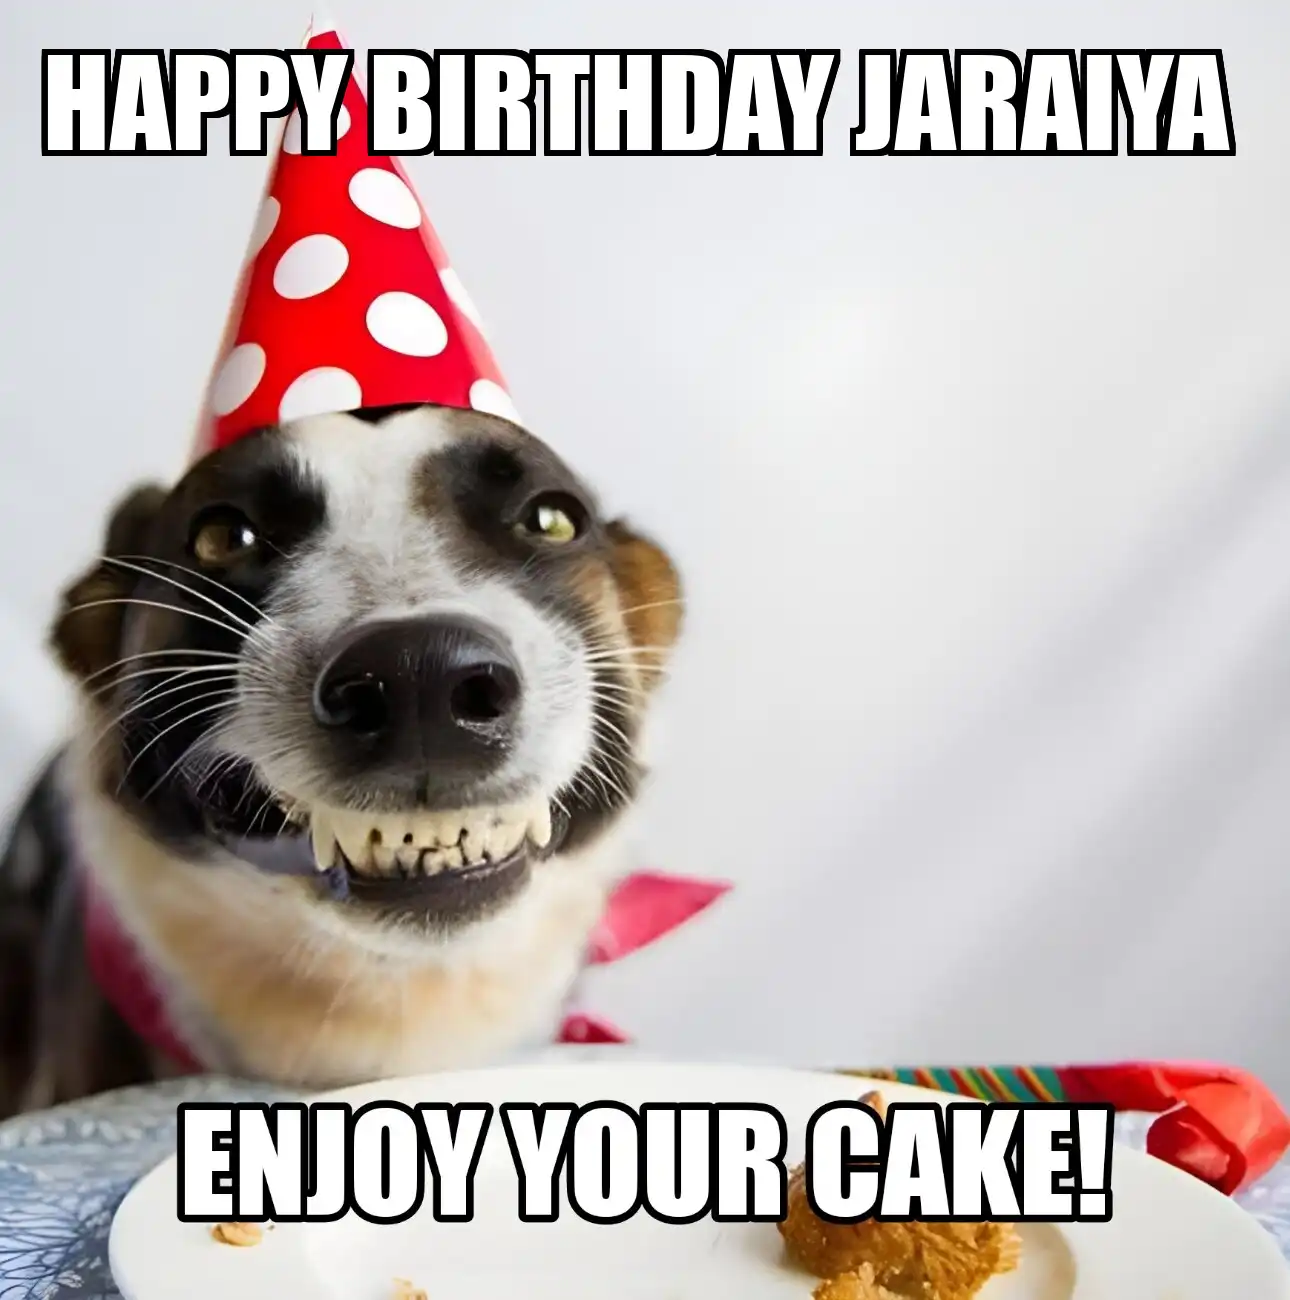 Happy Birthday Jaraiya Enjoy Your Cake Dog Meme